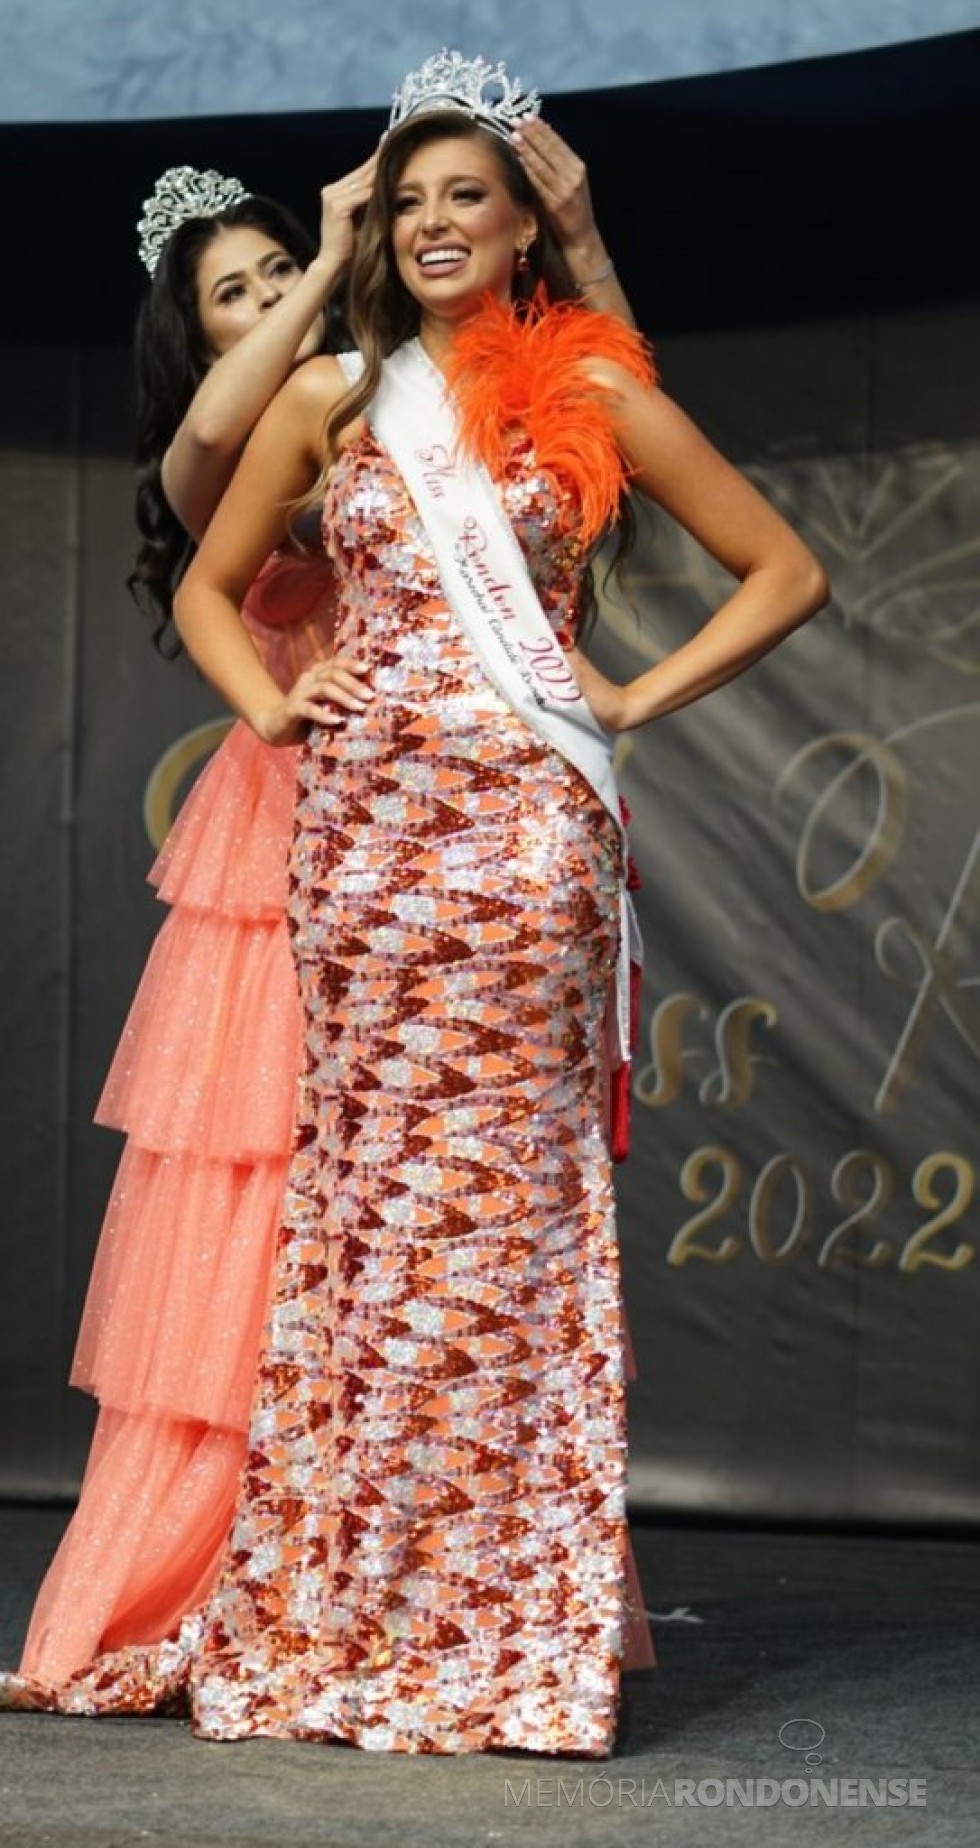 || Jéssica Krein recebendo a coroa de sua antecessora 2018, Camila Umeres de Oliveira, como Miss Marechal Cândido Rondon 2022.
Imagem: Acervo Imprensa PM-MCR - FOTO 35 - 